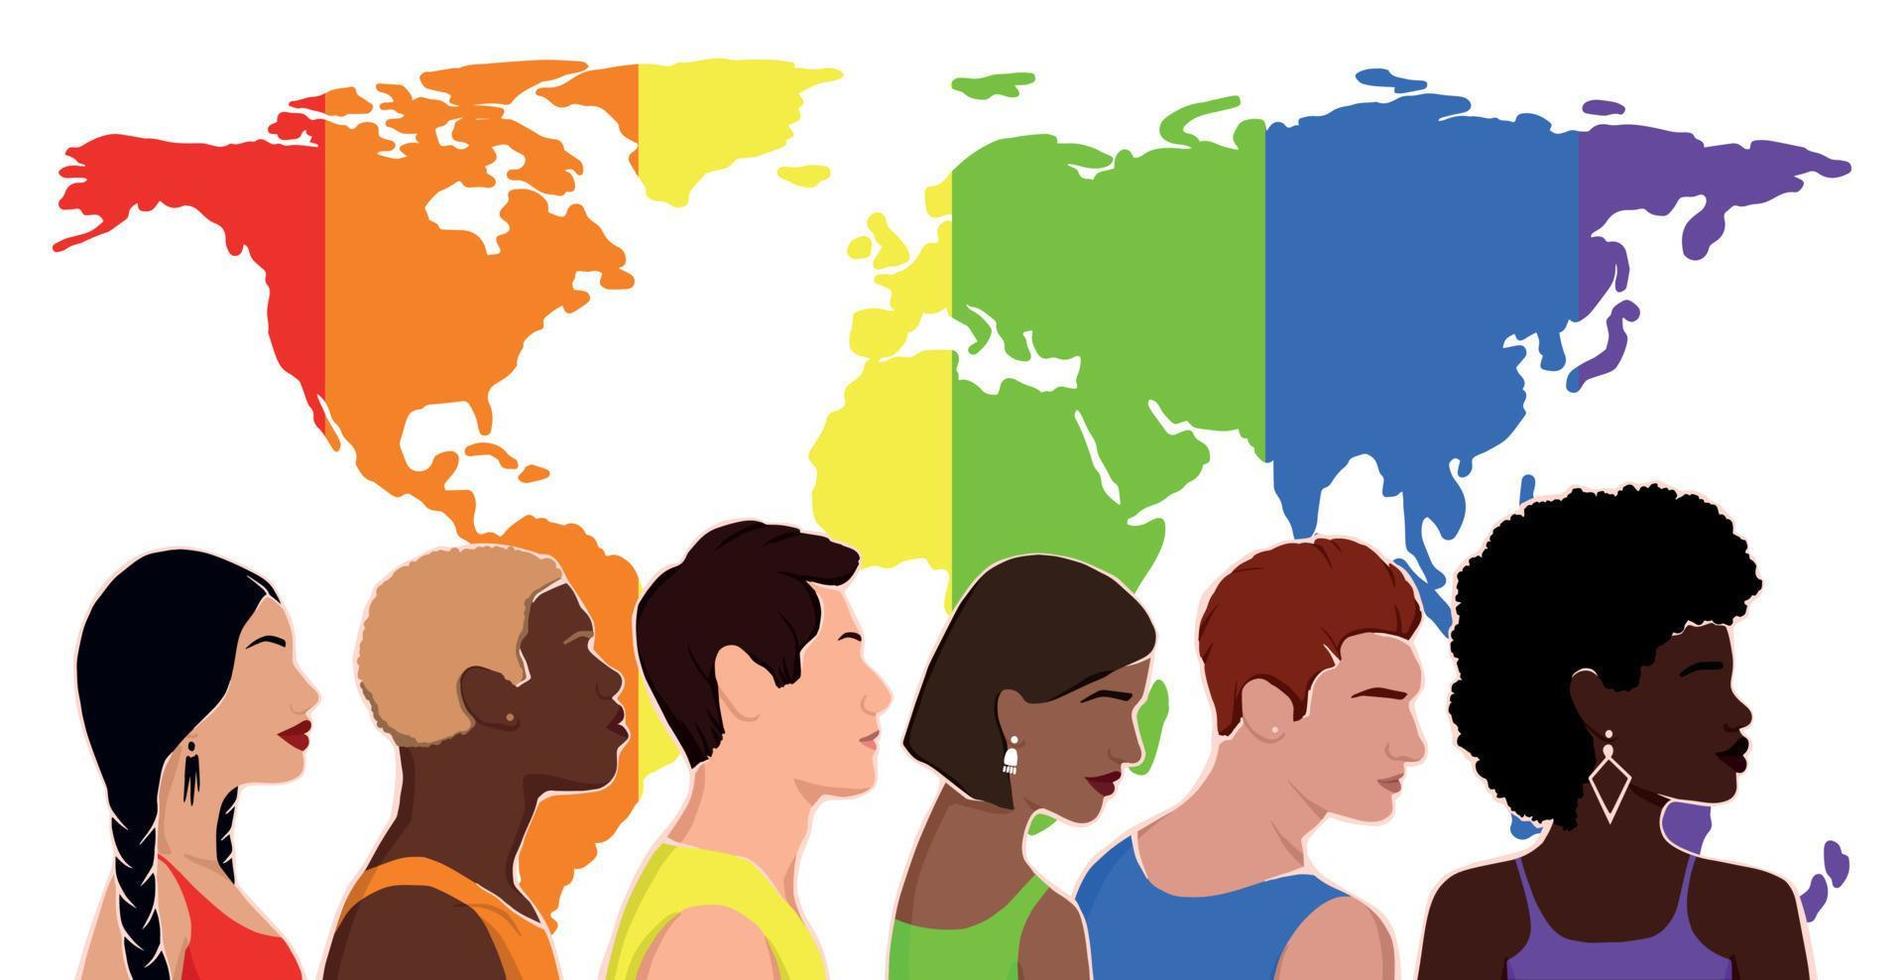 personas de diferentes grupos étnicos con ropa de colores del arco iris. comunidad lgbt. derechos humanos. lgbtq. ilustración plana con mapa. mes del orgullo vector